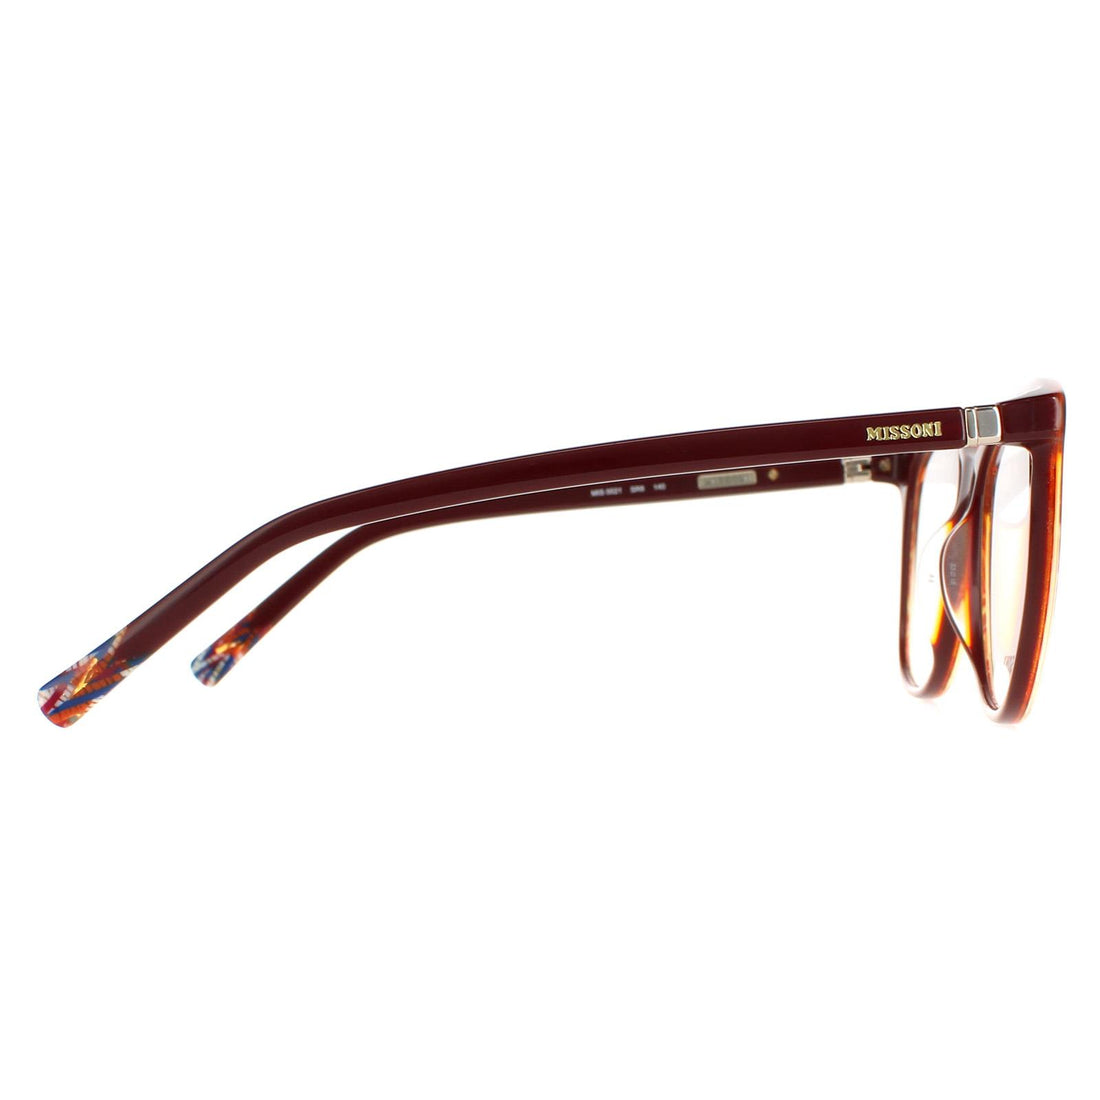 Missoni Glasses Frames MIS 0021 SR8 Burgundy Patterned Women